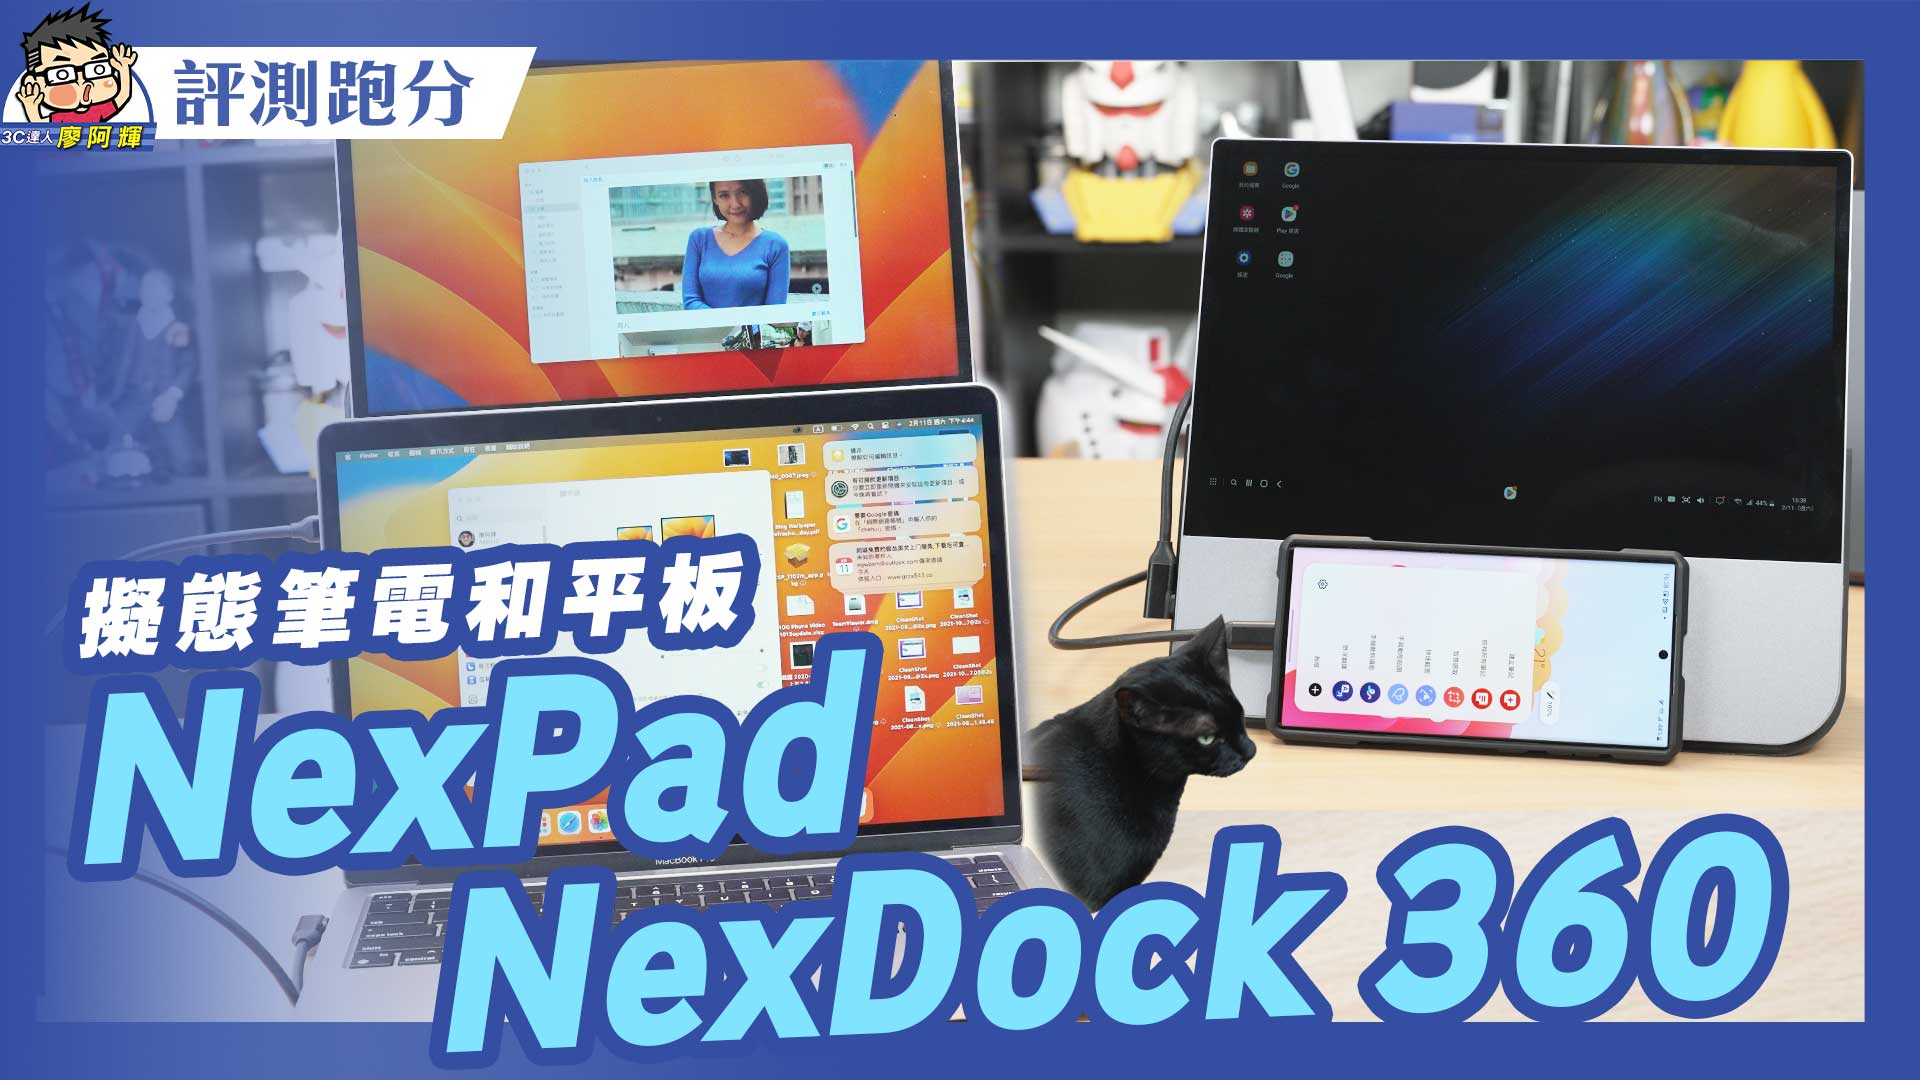 [影片] 奇葩 3C 開箱 NexDock 360 + NexPad 動手玩應用教學 #阿輝買什麼 #dex @3C 達人廖阿輝